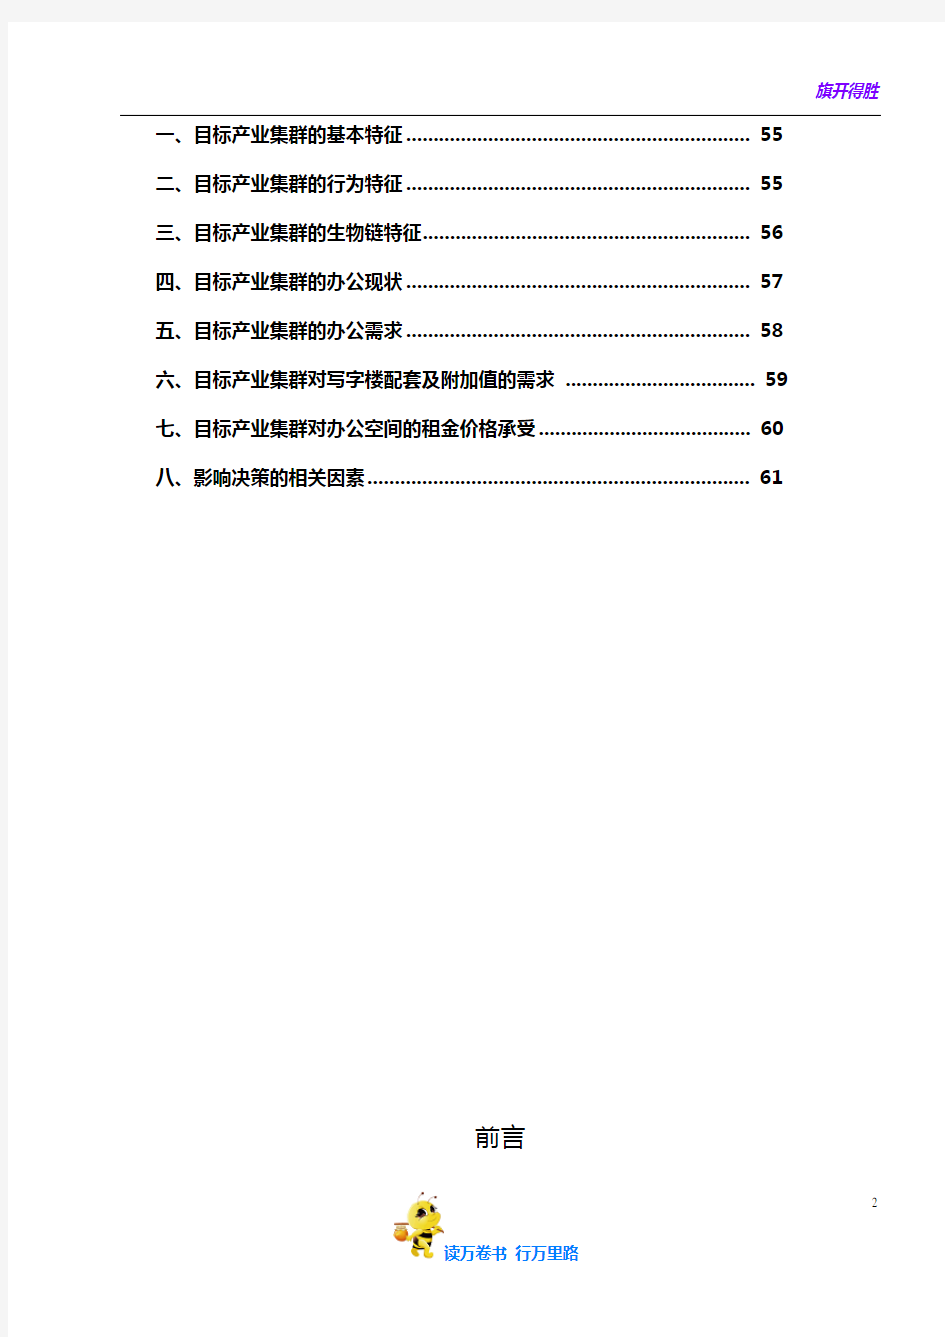 【定稿】宁波和丰创意产业园市场调研报告44页DOC